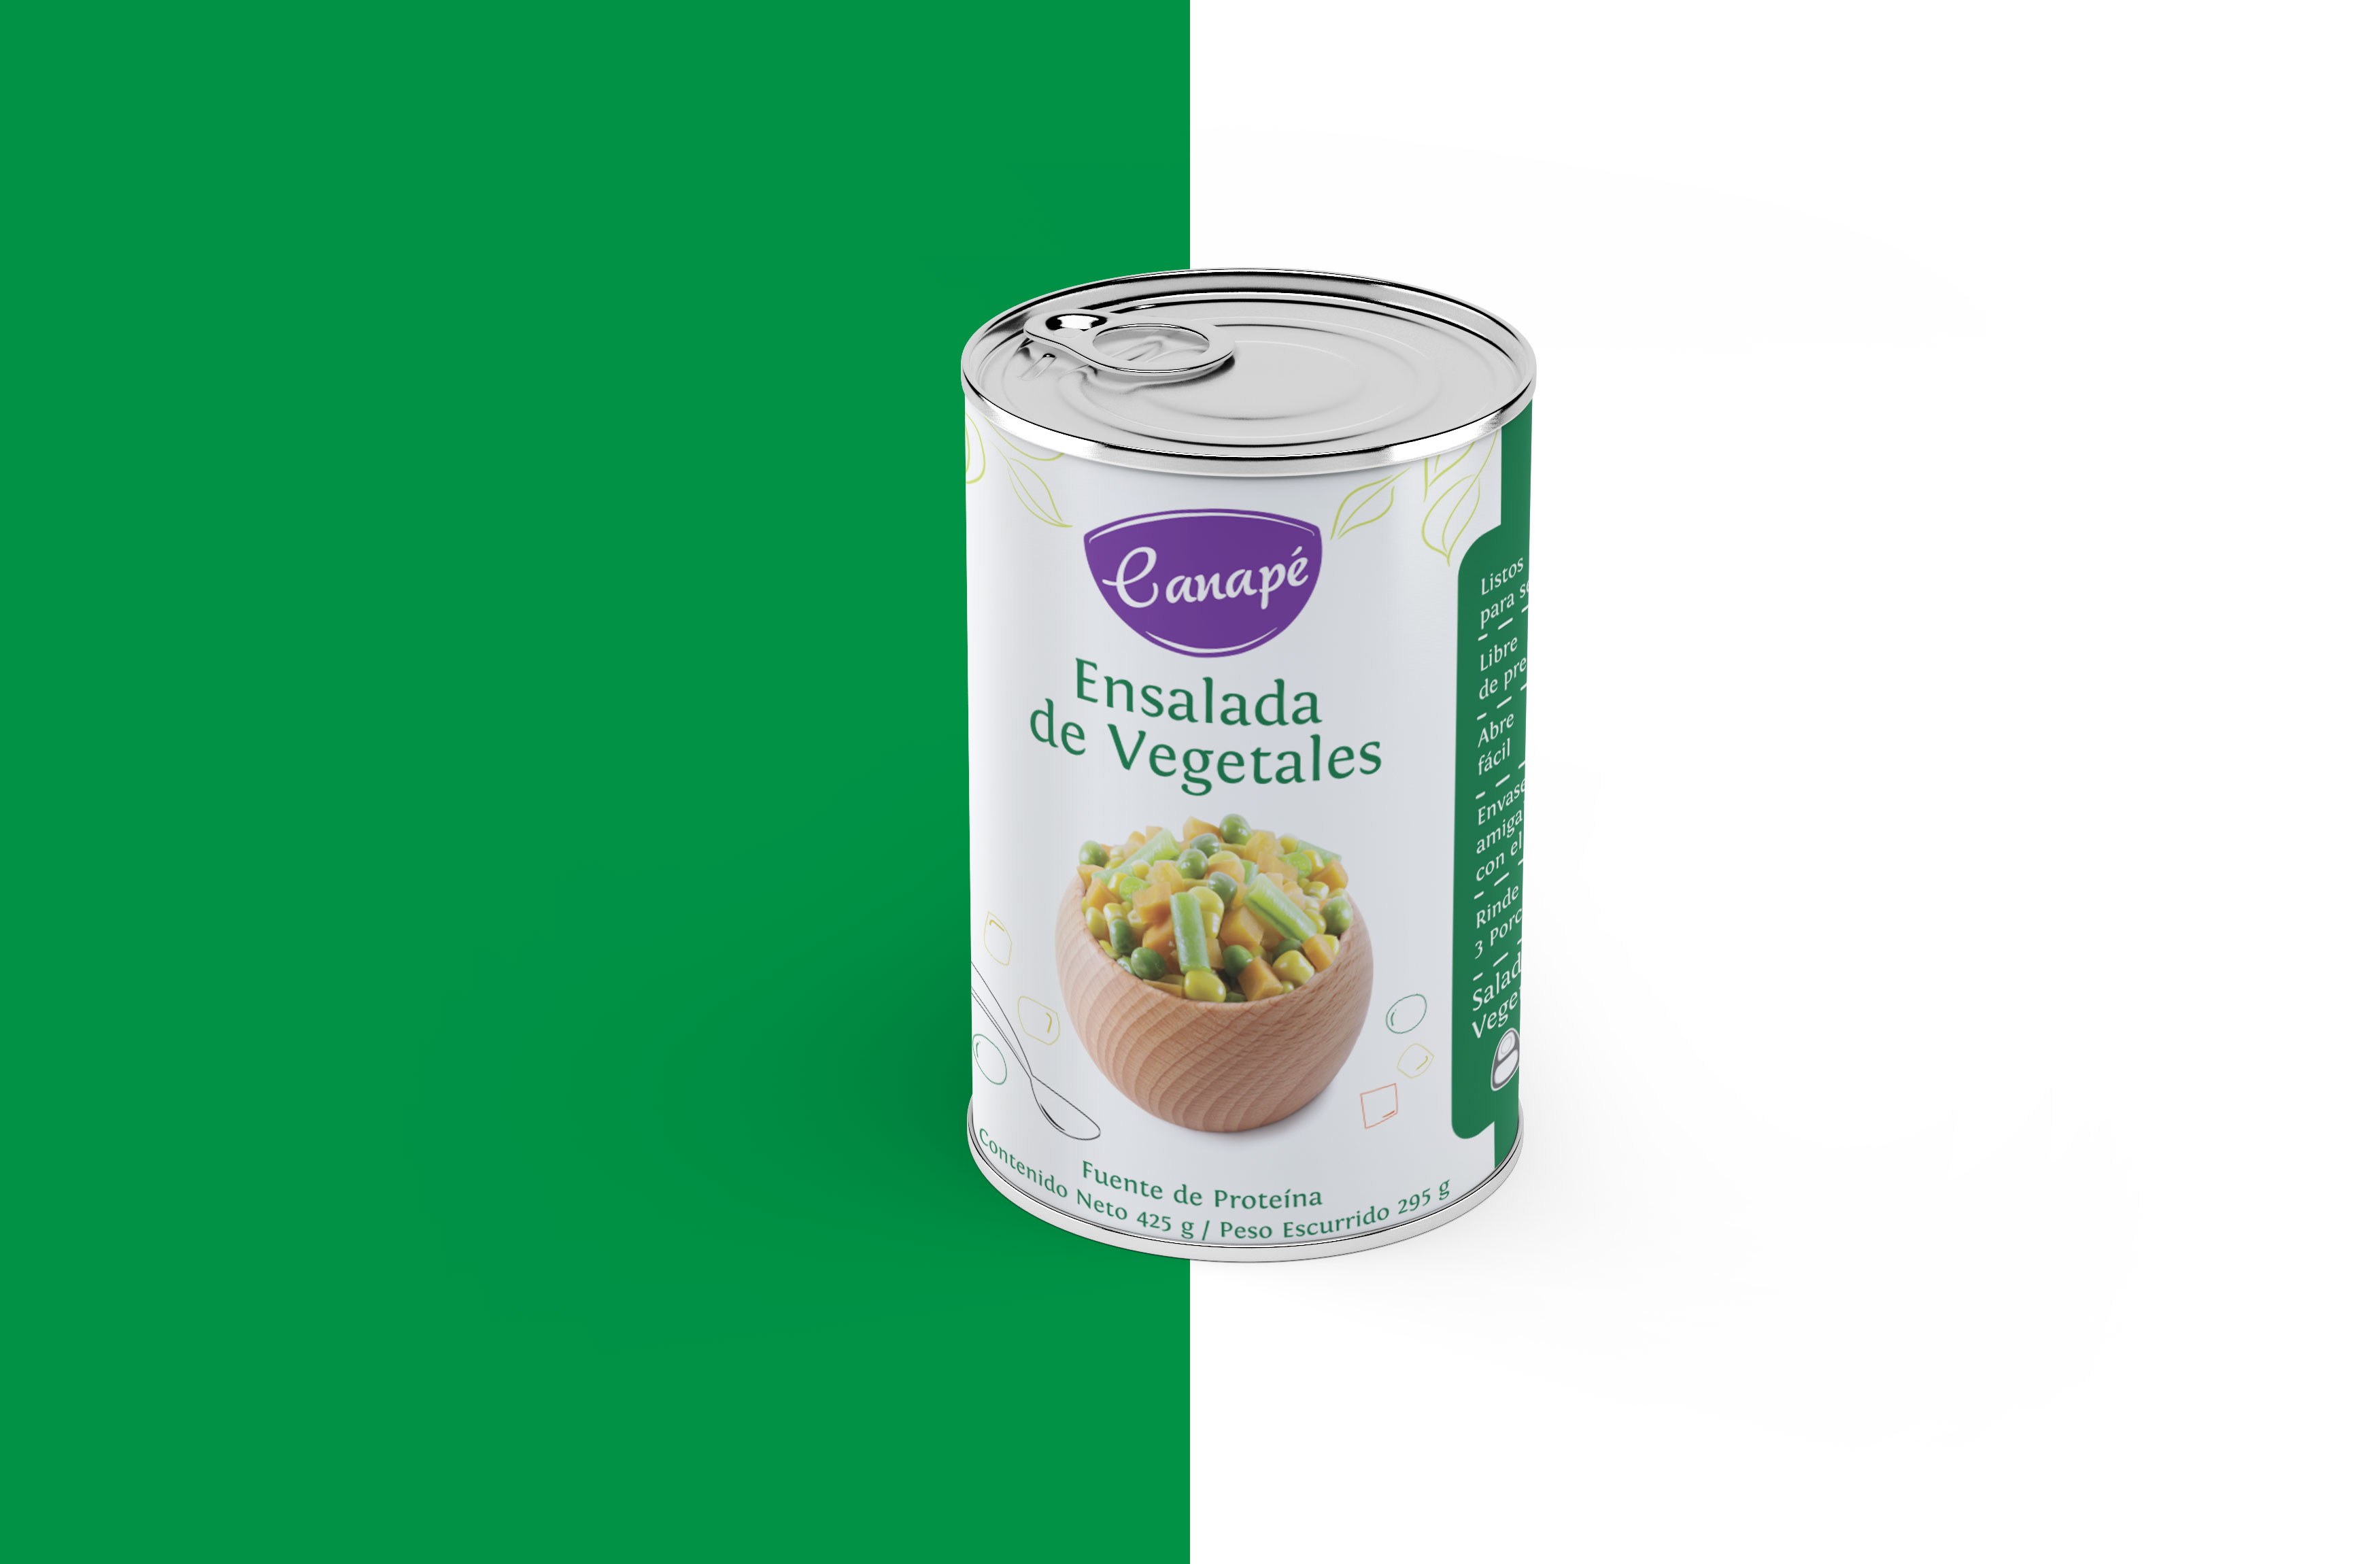 Label design - Canapé ensalada vegetales